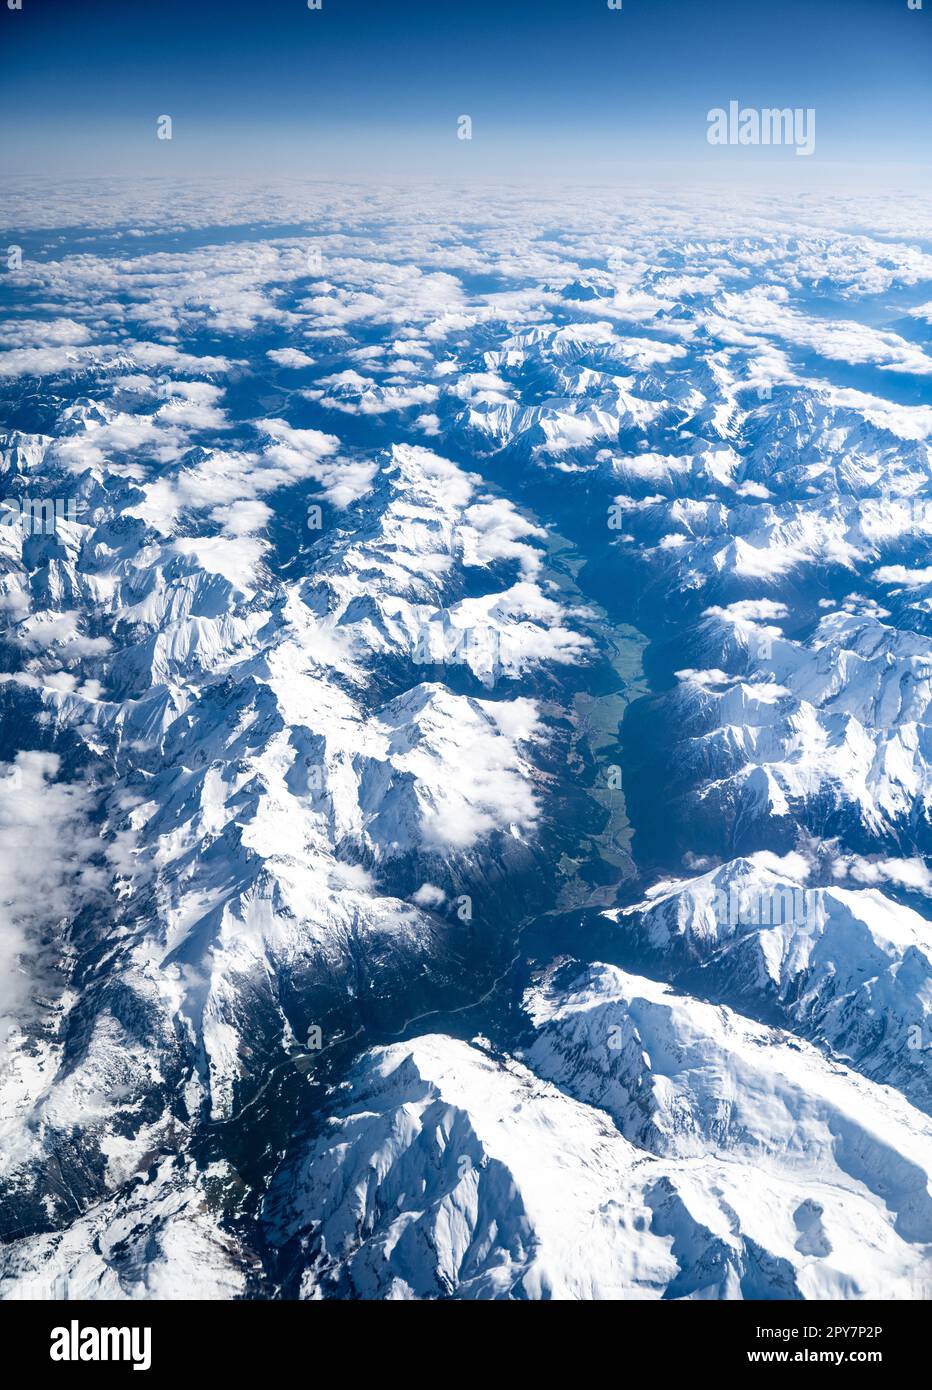 Vue sur une journée ensoleillée sans nuages depuis l'avion sur les Alpes autrichiennes dont les sommets sont encore couverts de neige et les vallées sont vertes. Banque D'Images